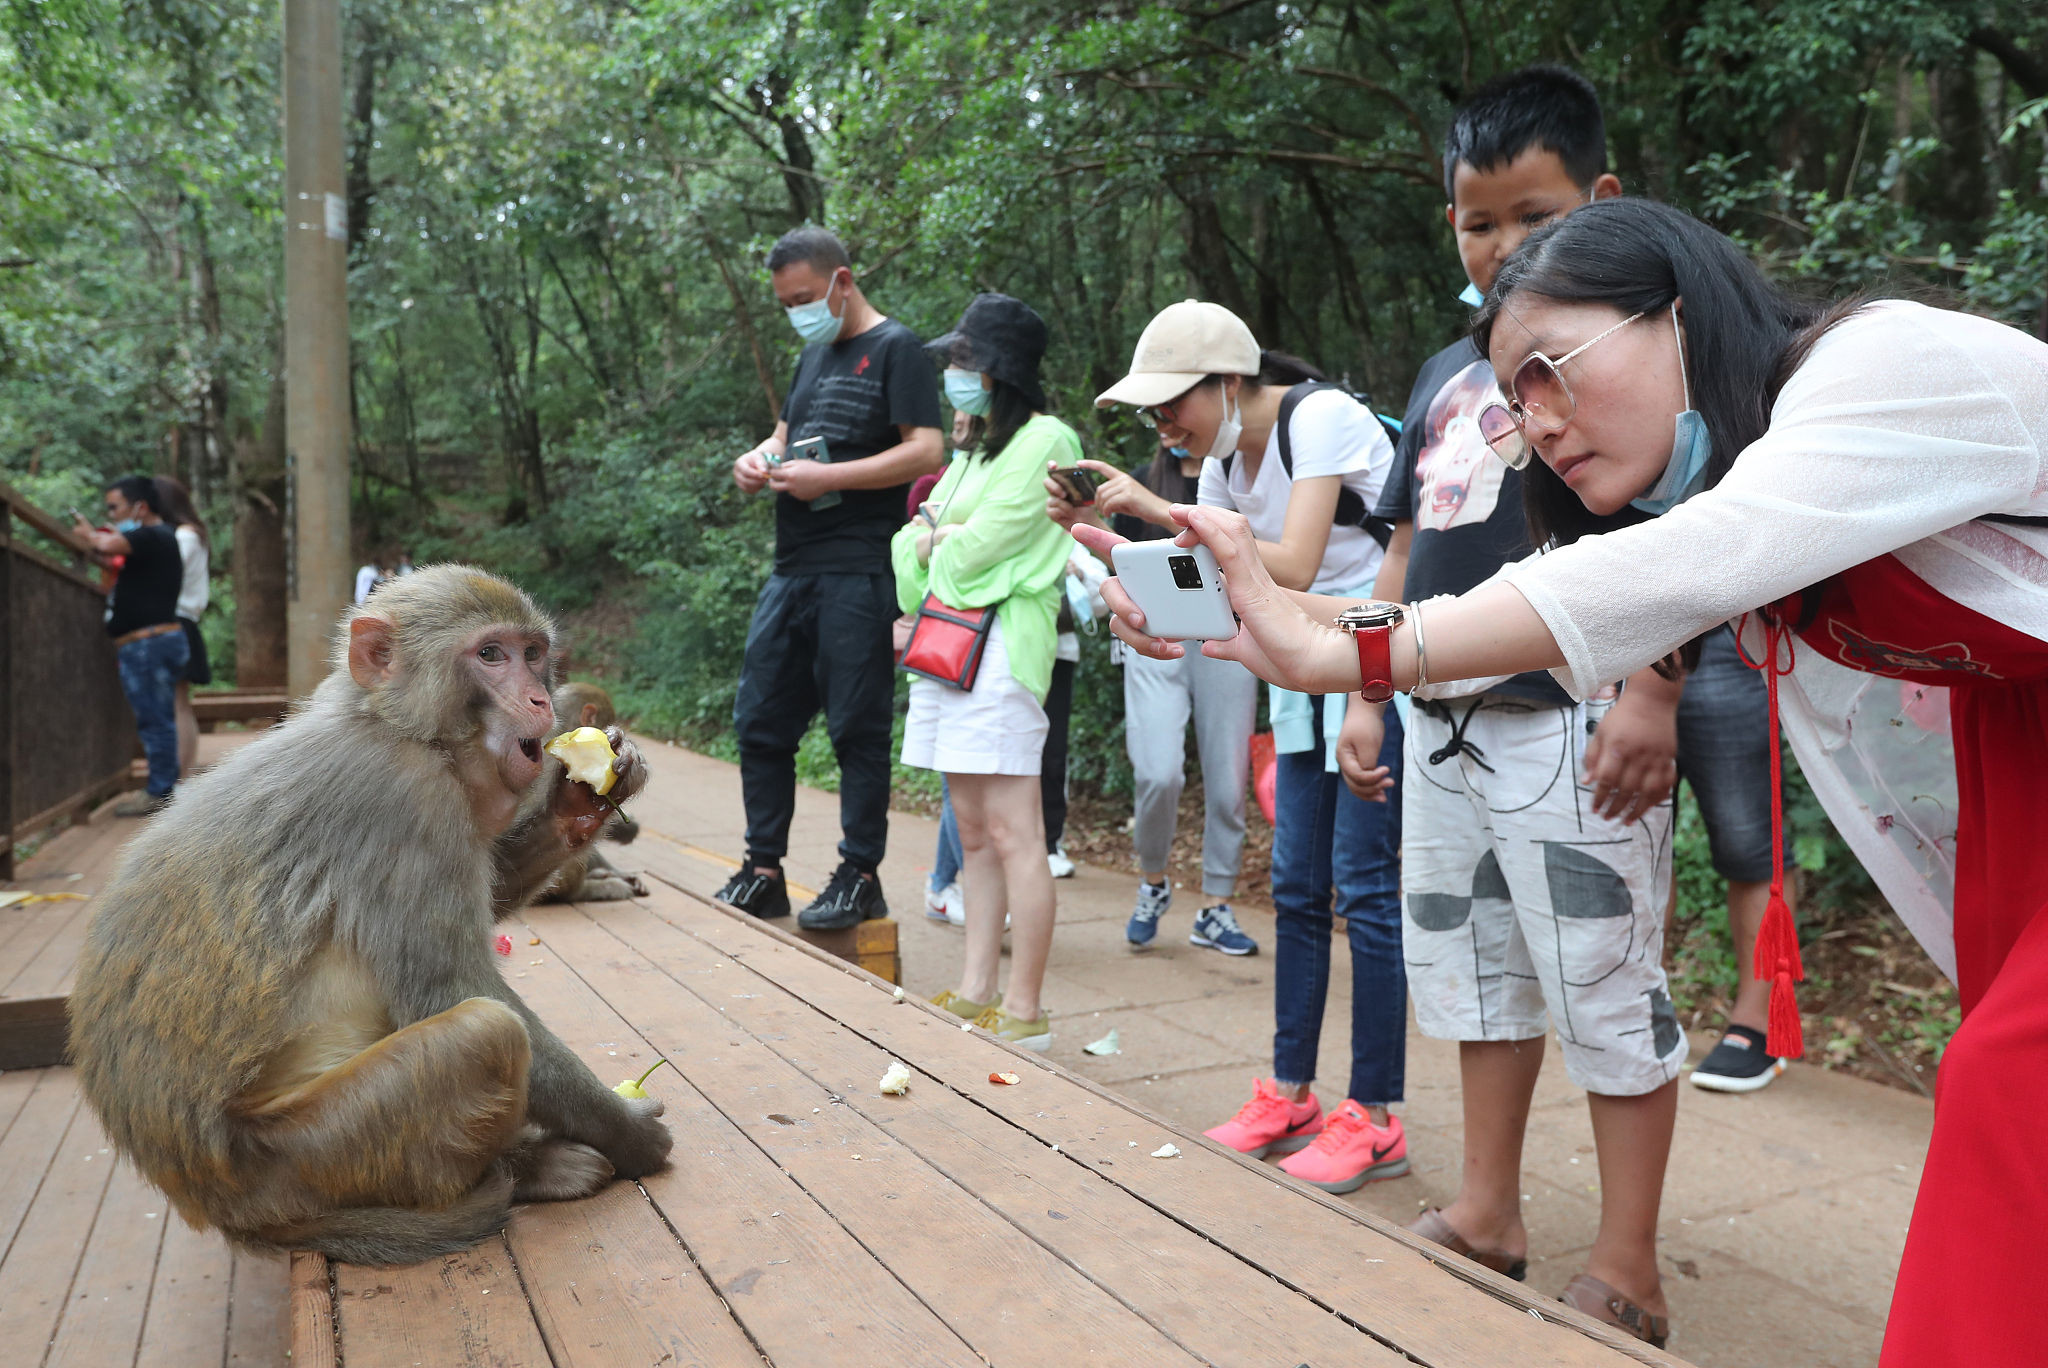 2020年7月14日,云南省大理州,在宾川鸡足山旅游景区,游人在观猴投食区